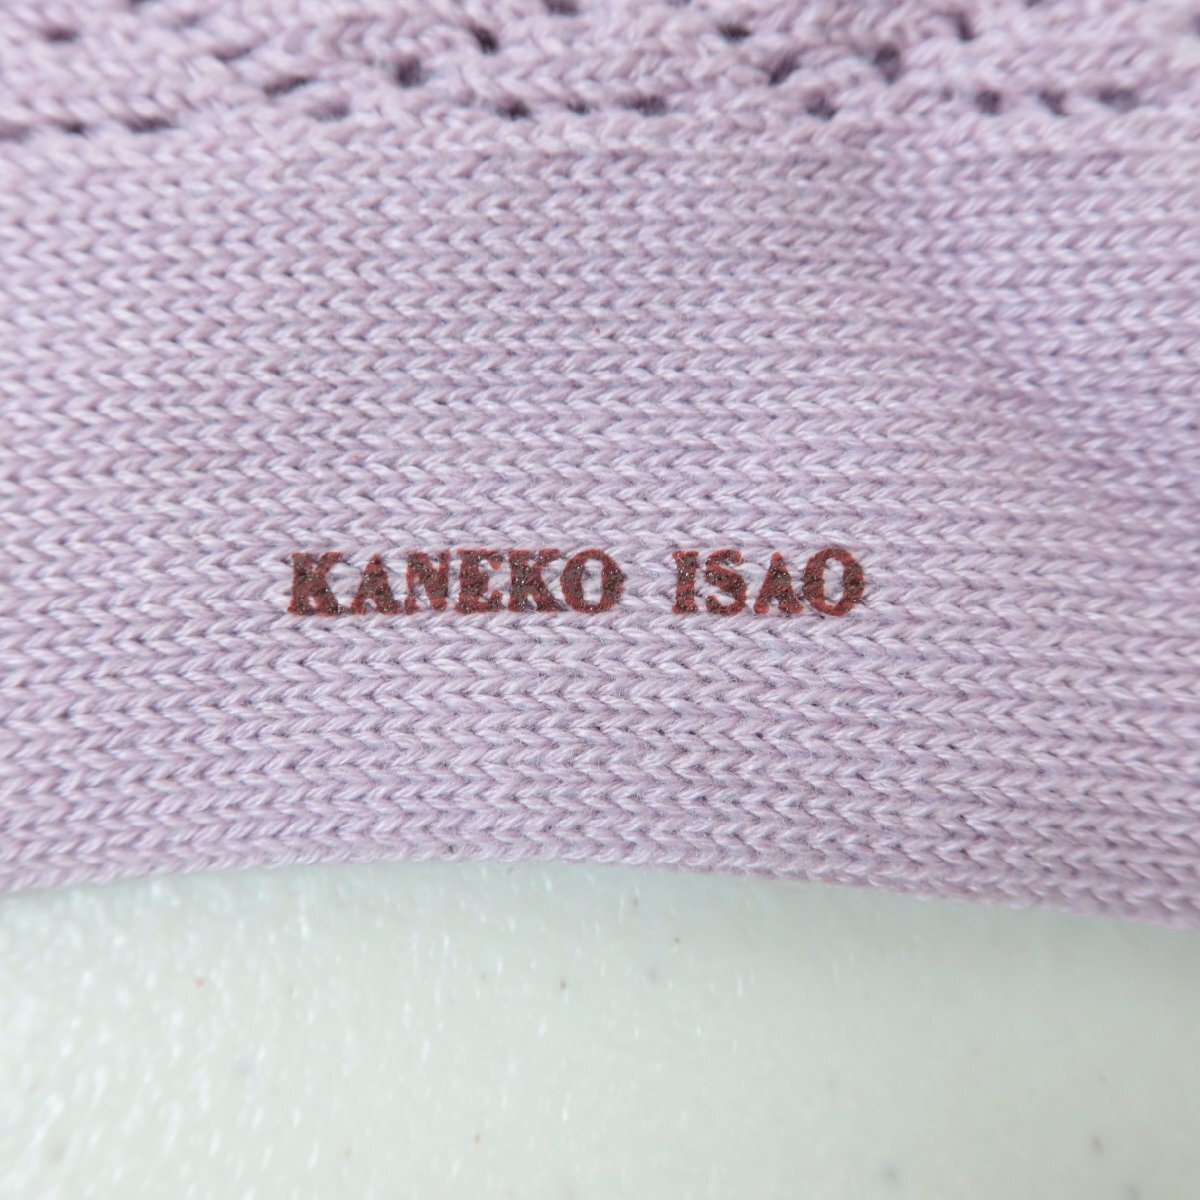 [1 иен старт ][ не использовался товар ] Kaneko Isao * симпатичный ... плетеный &. цветок узор! носки носки лиловый серия letter pack почтовый сервис возможно простой k2618